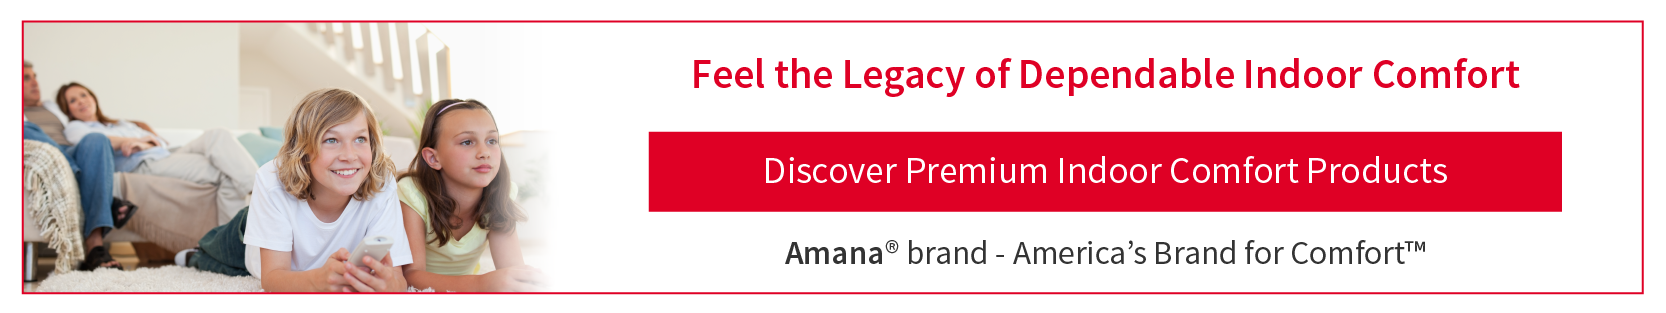 Reliable Amana brand indoor comfort